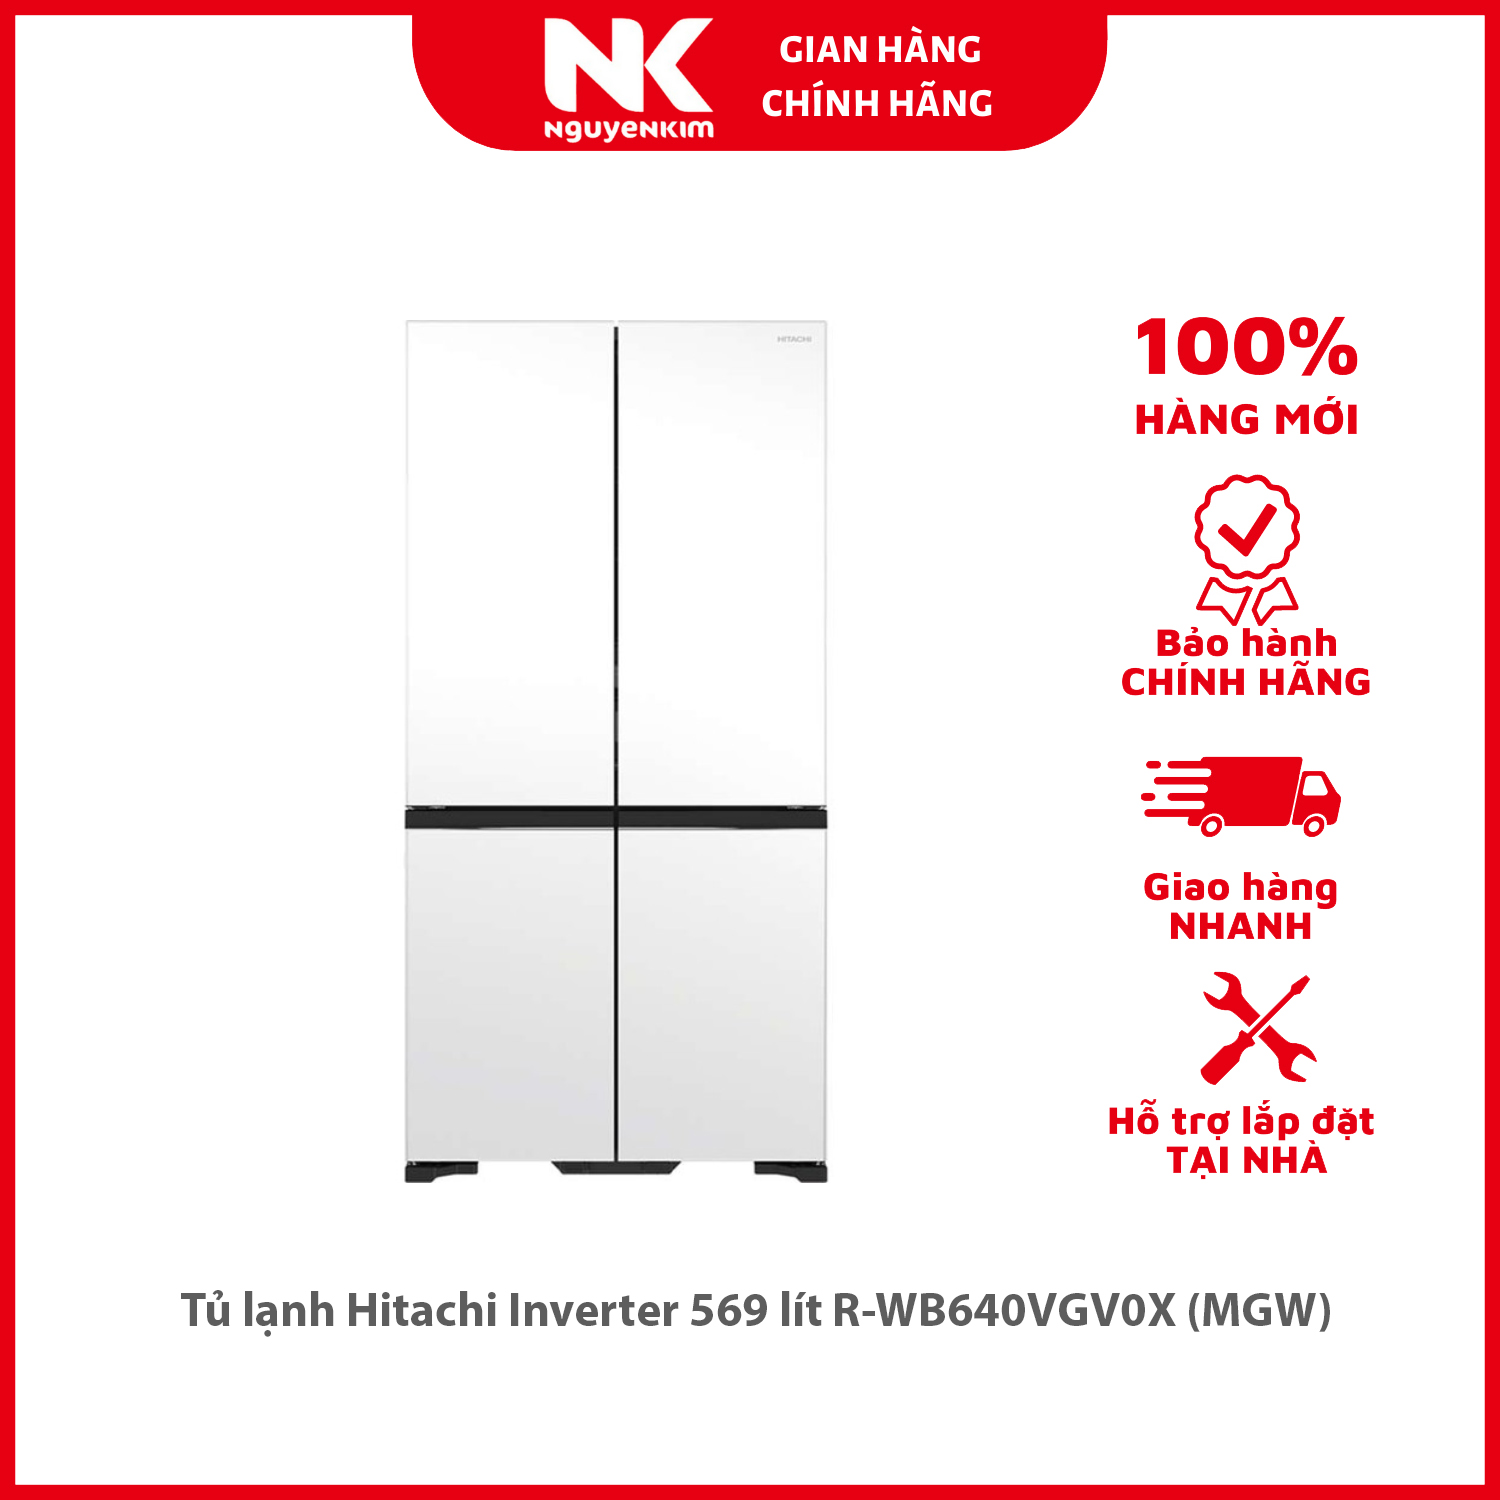 Tủ lạnh Hitachi Inverter 569 lít R-WB640VGV0X (MGW) - Hàng chính hãng [Giao hàng toàn quốc]